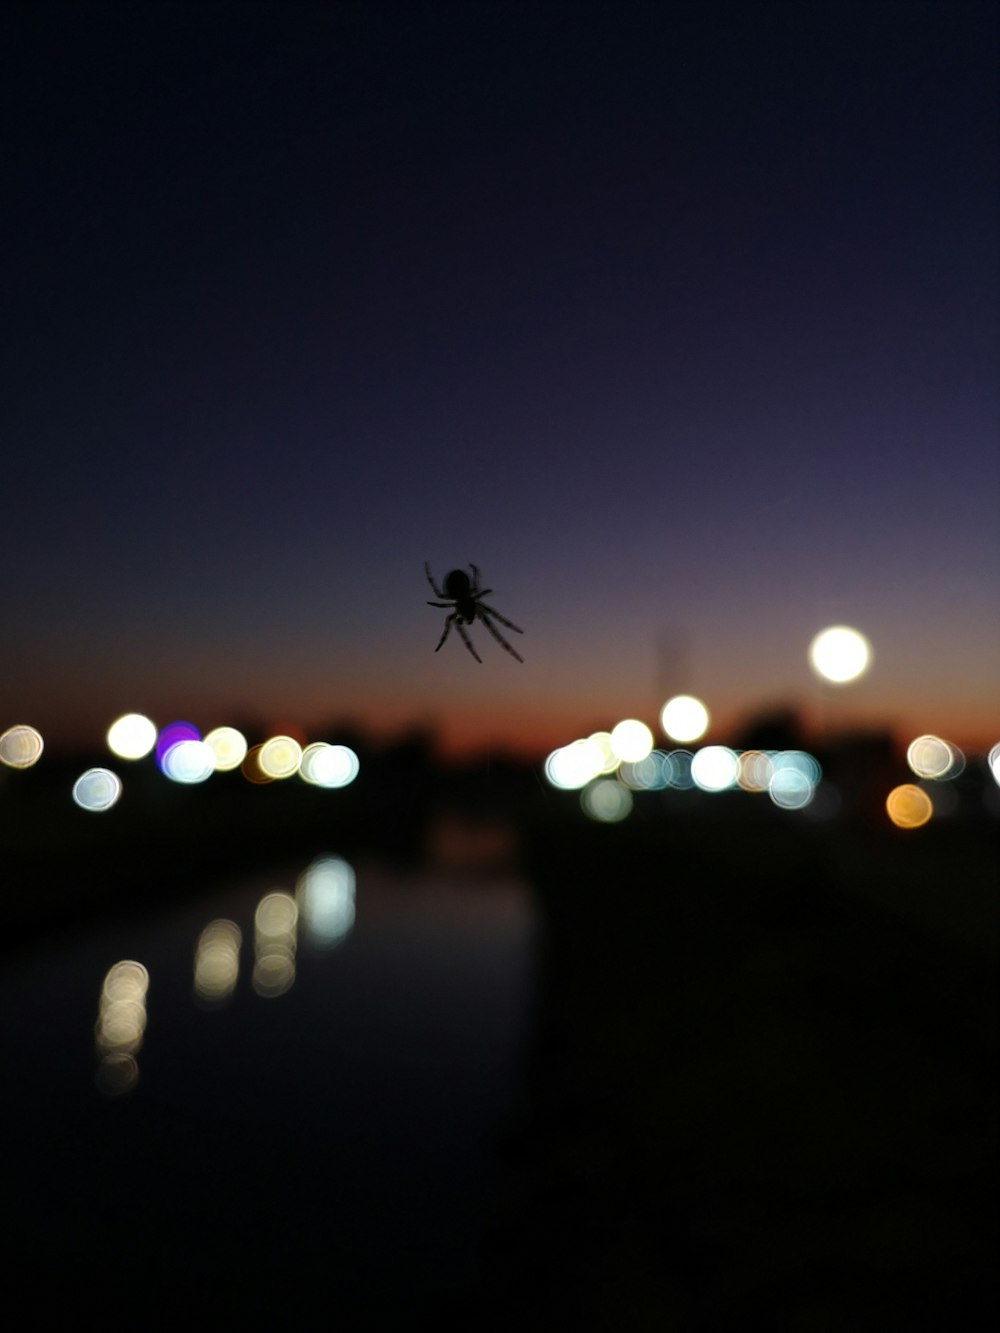 eine Spinne, die nachts an der Seite eines Gebäudes hängt